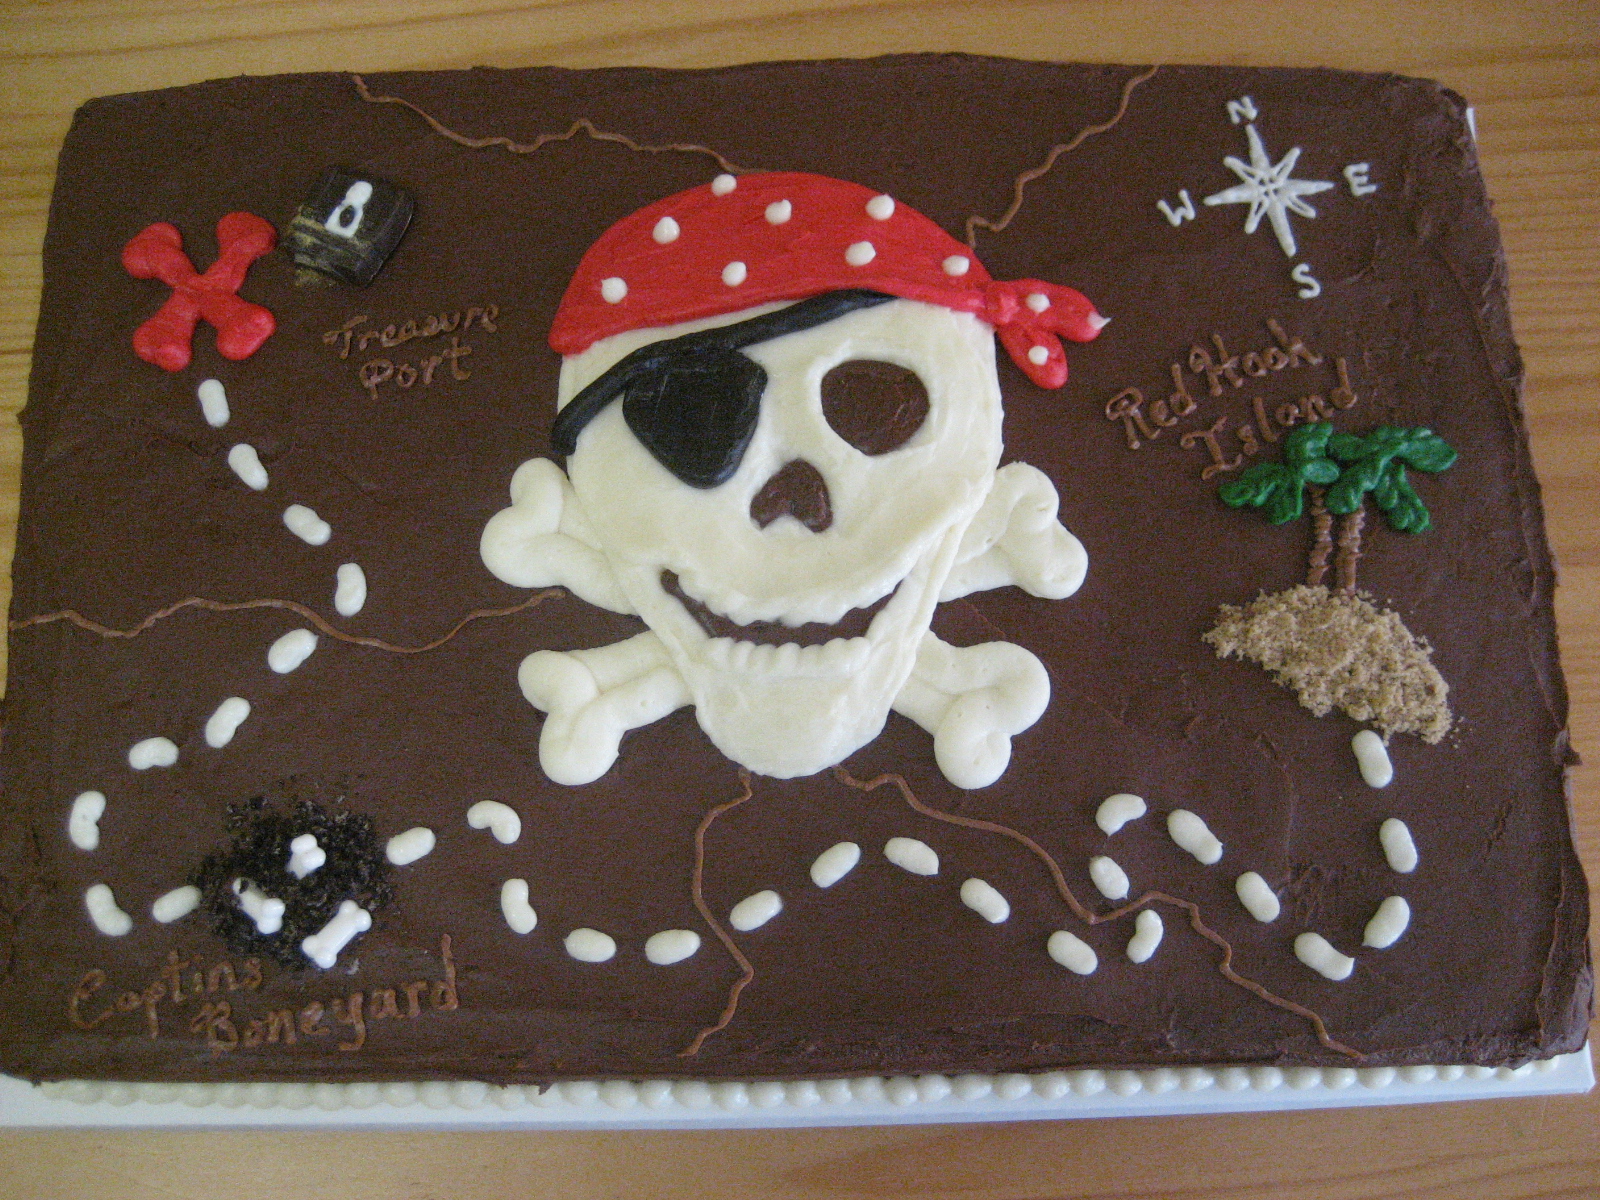 Pirate Treasure Map Birthday Cake